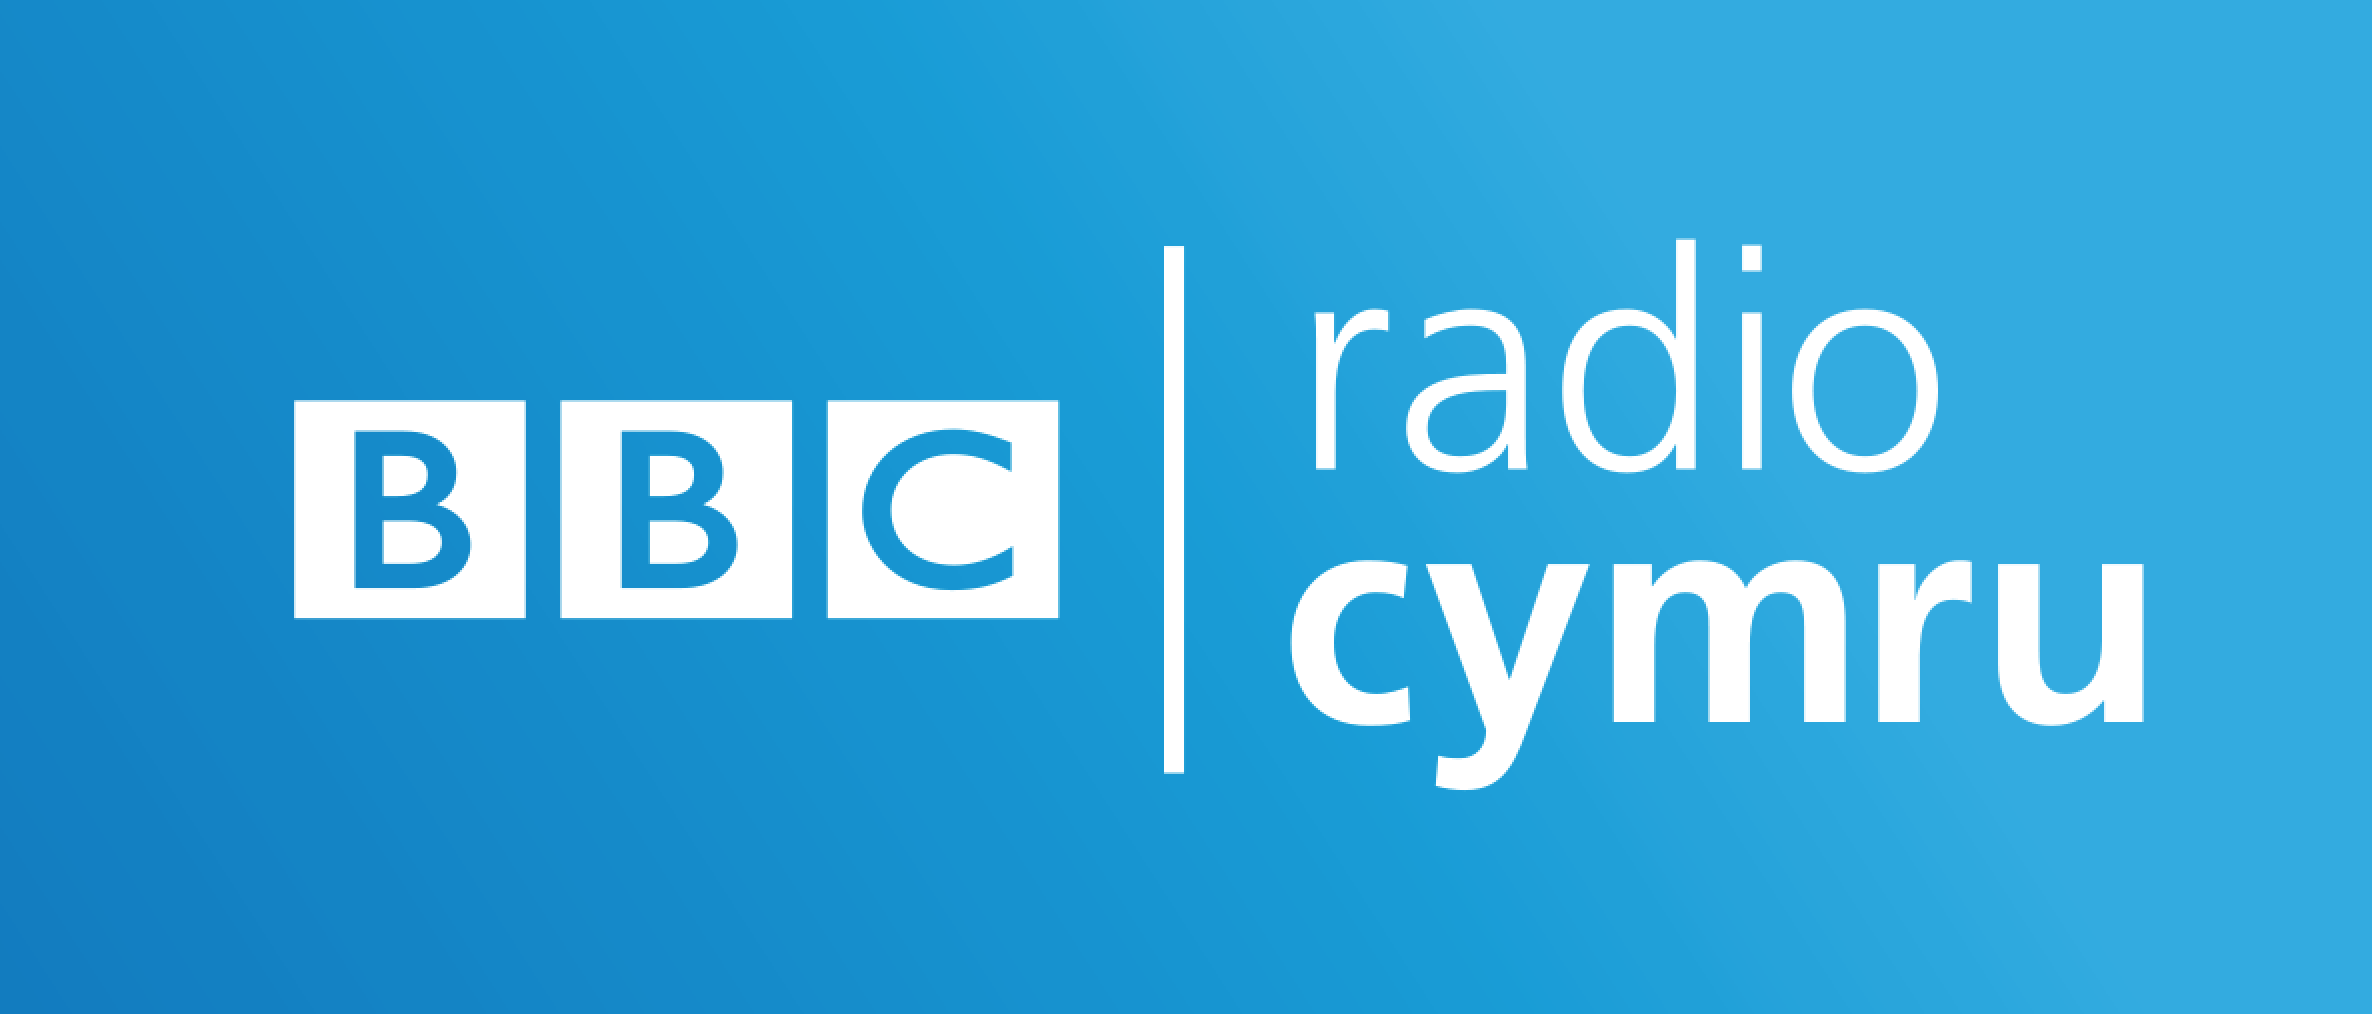 bbcradio